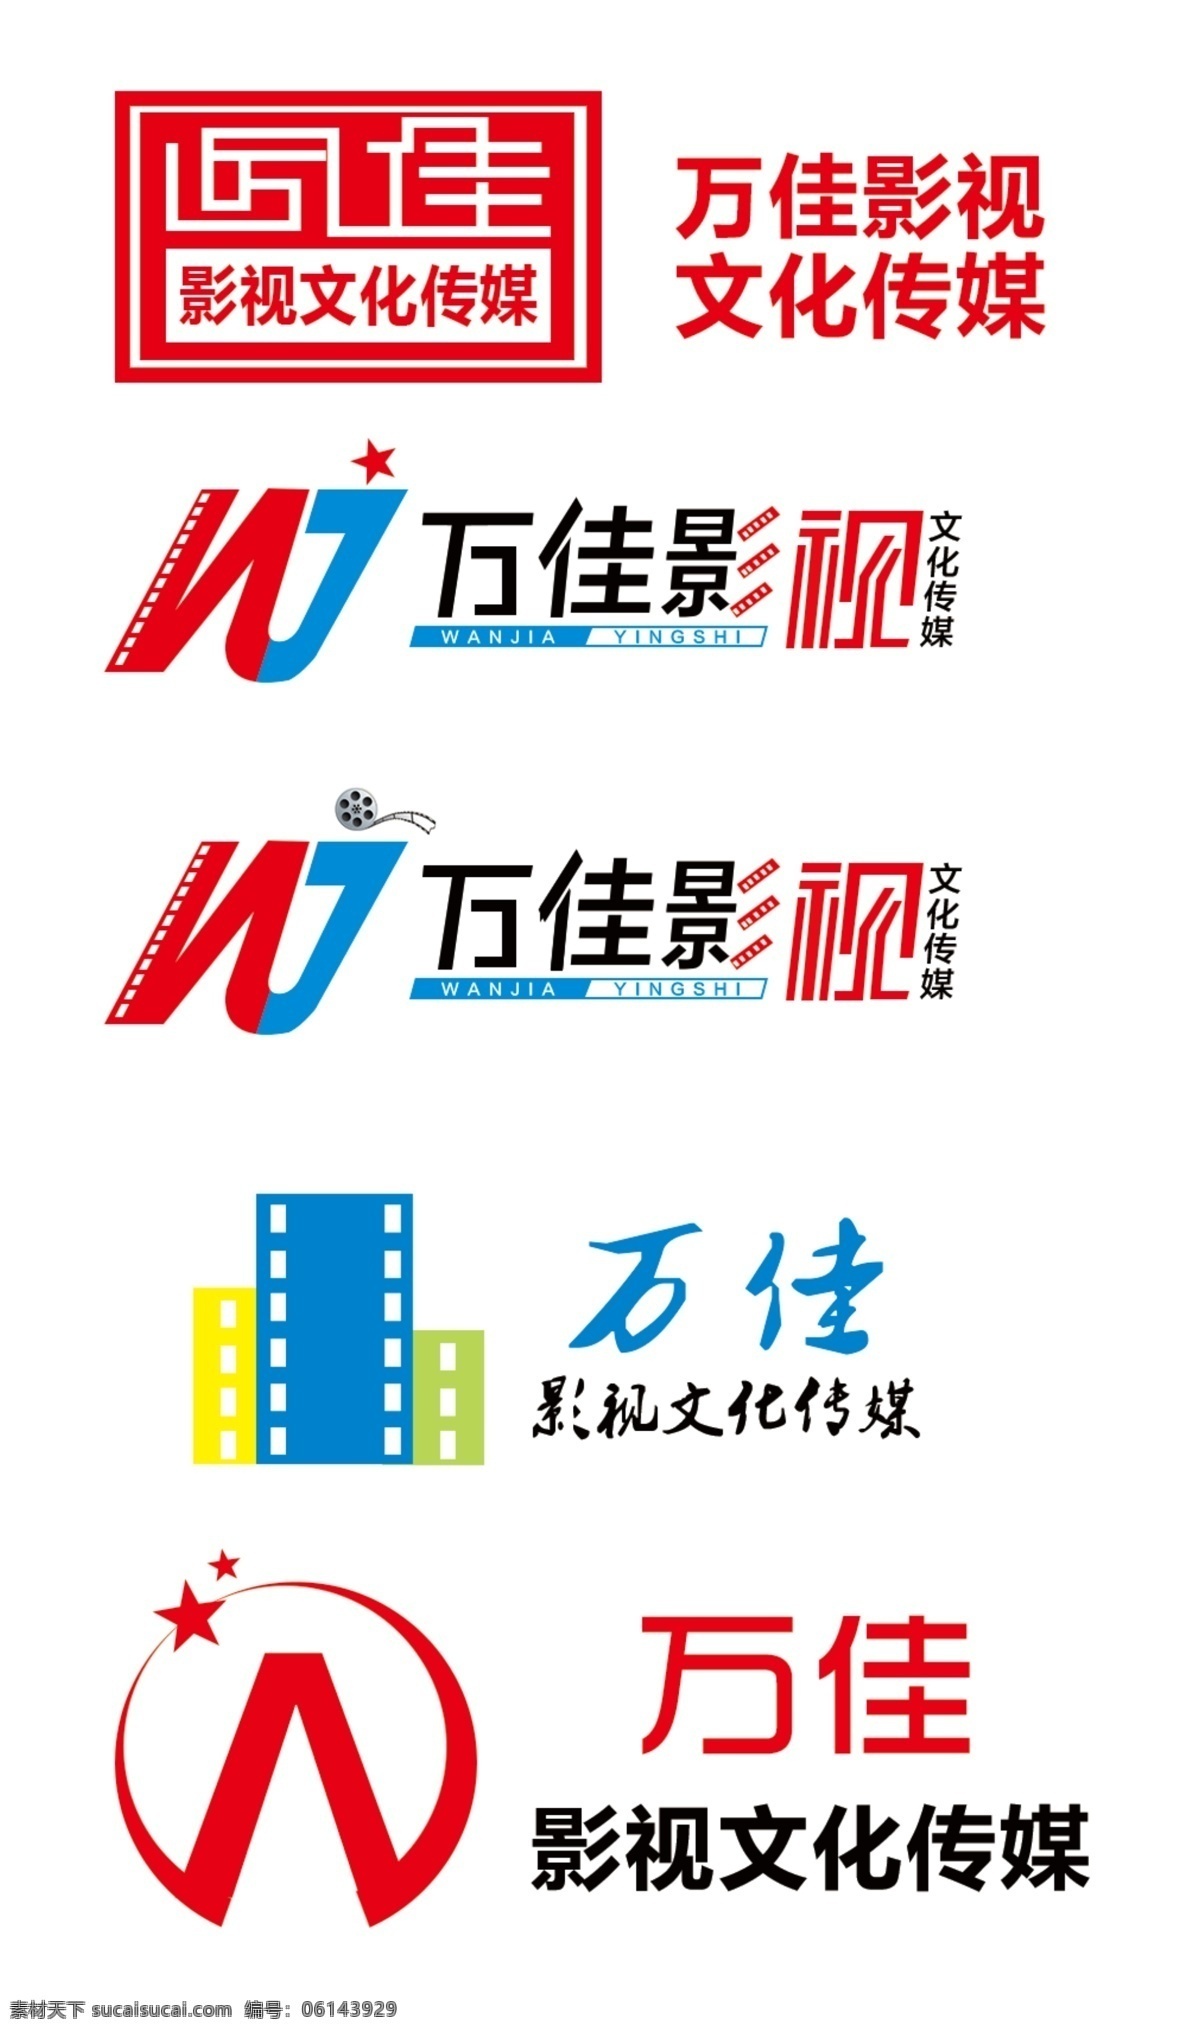 万佳影视 logo 万佳 wj 影视公司 影视 标志 标识 我的作品 logo设计